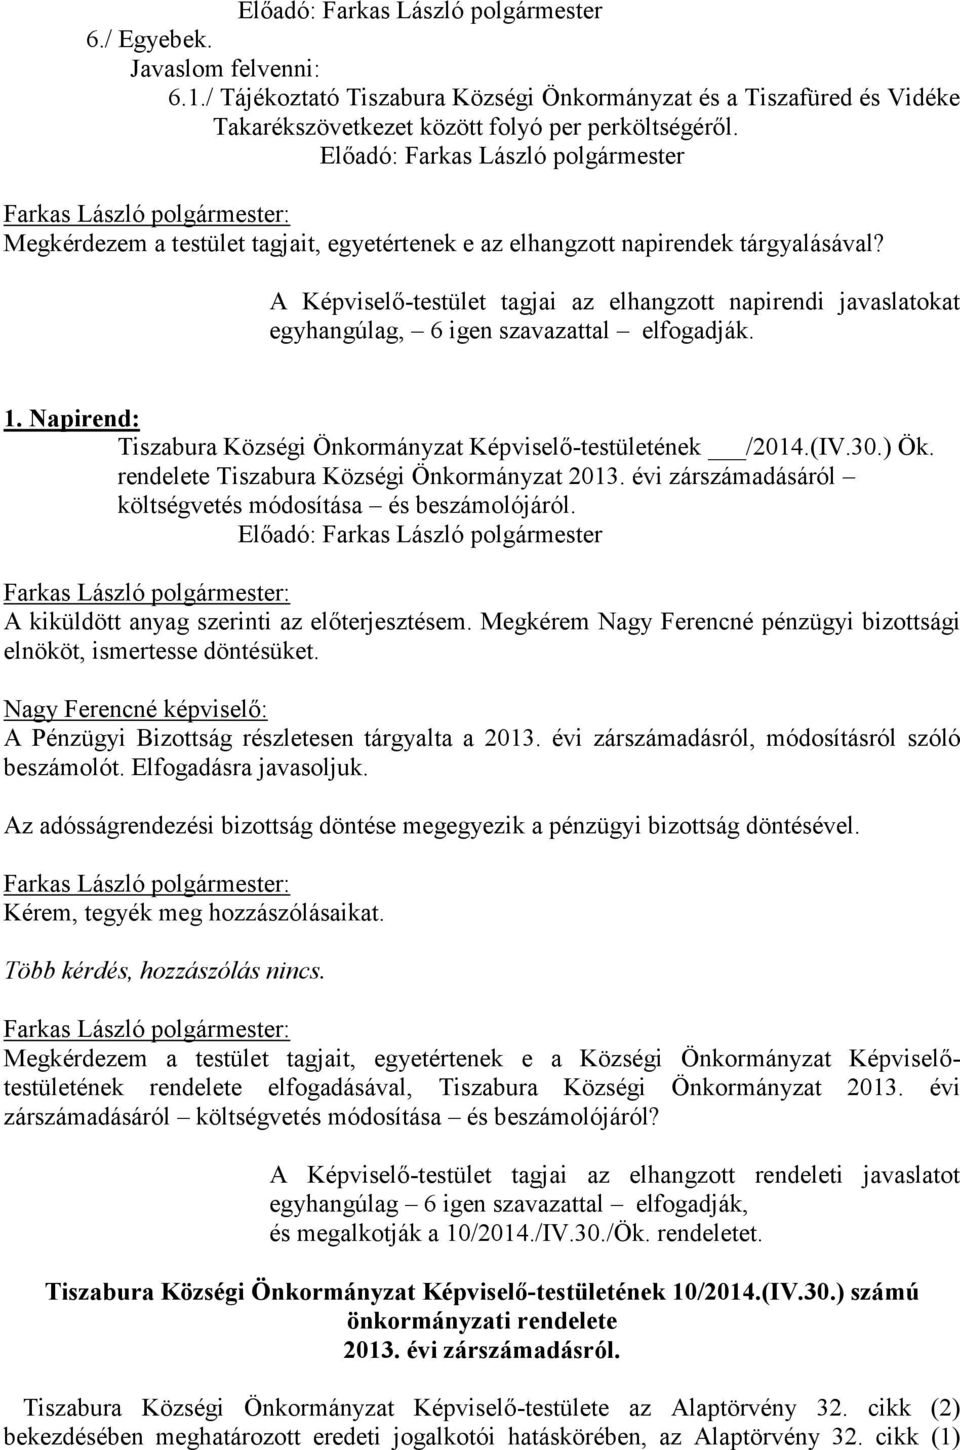 A Képviselő-testület tagjai az elhangzott napirendi javaslatokat egyhangúlag, 6 igen szavazattal elfogadják. 1. Napirend: Tiszabura Községi Önkormányzat Képviselő-testületének /2014.(IV.30.) Ök.